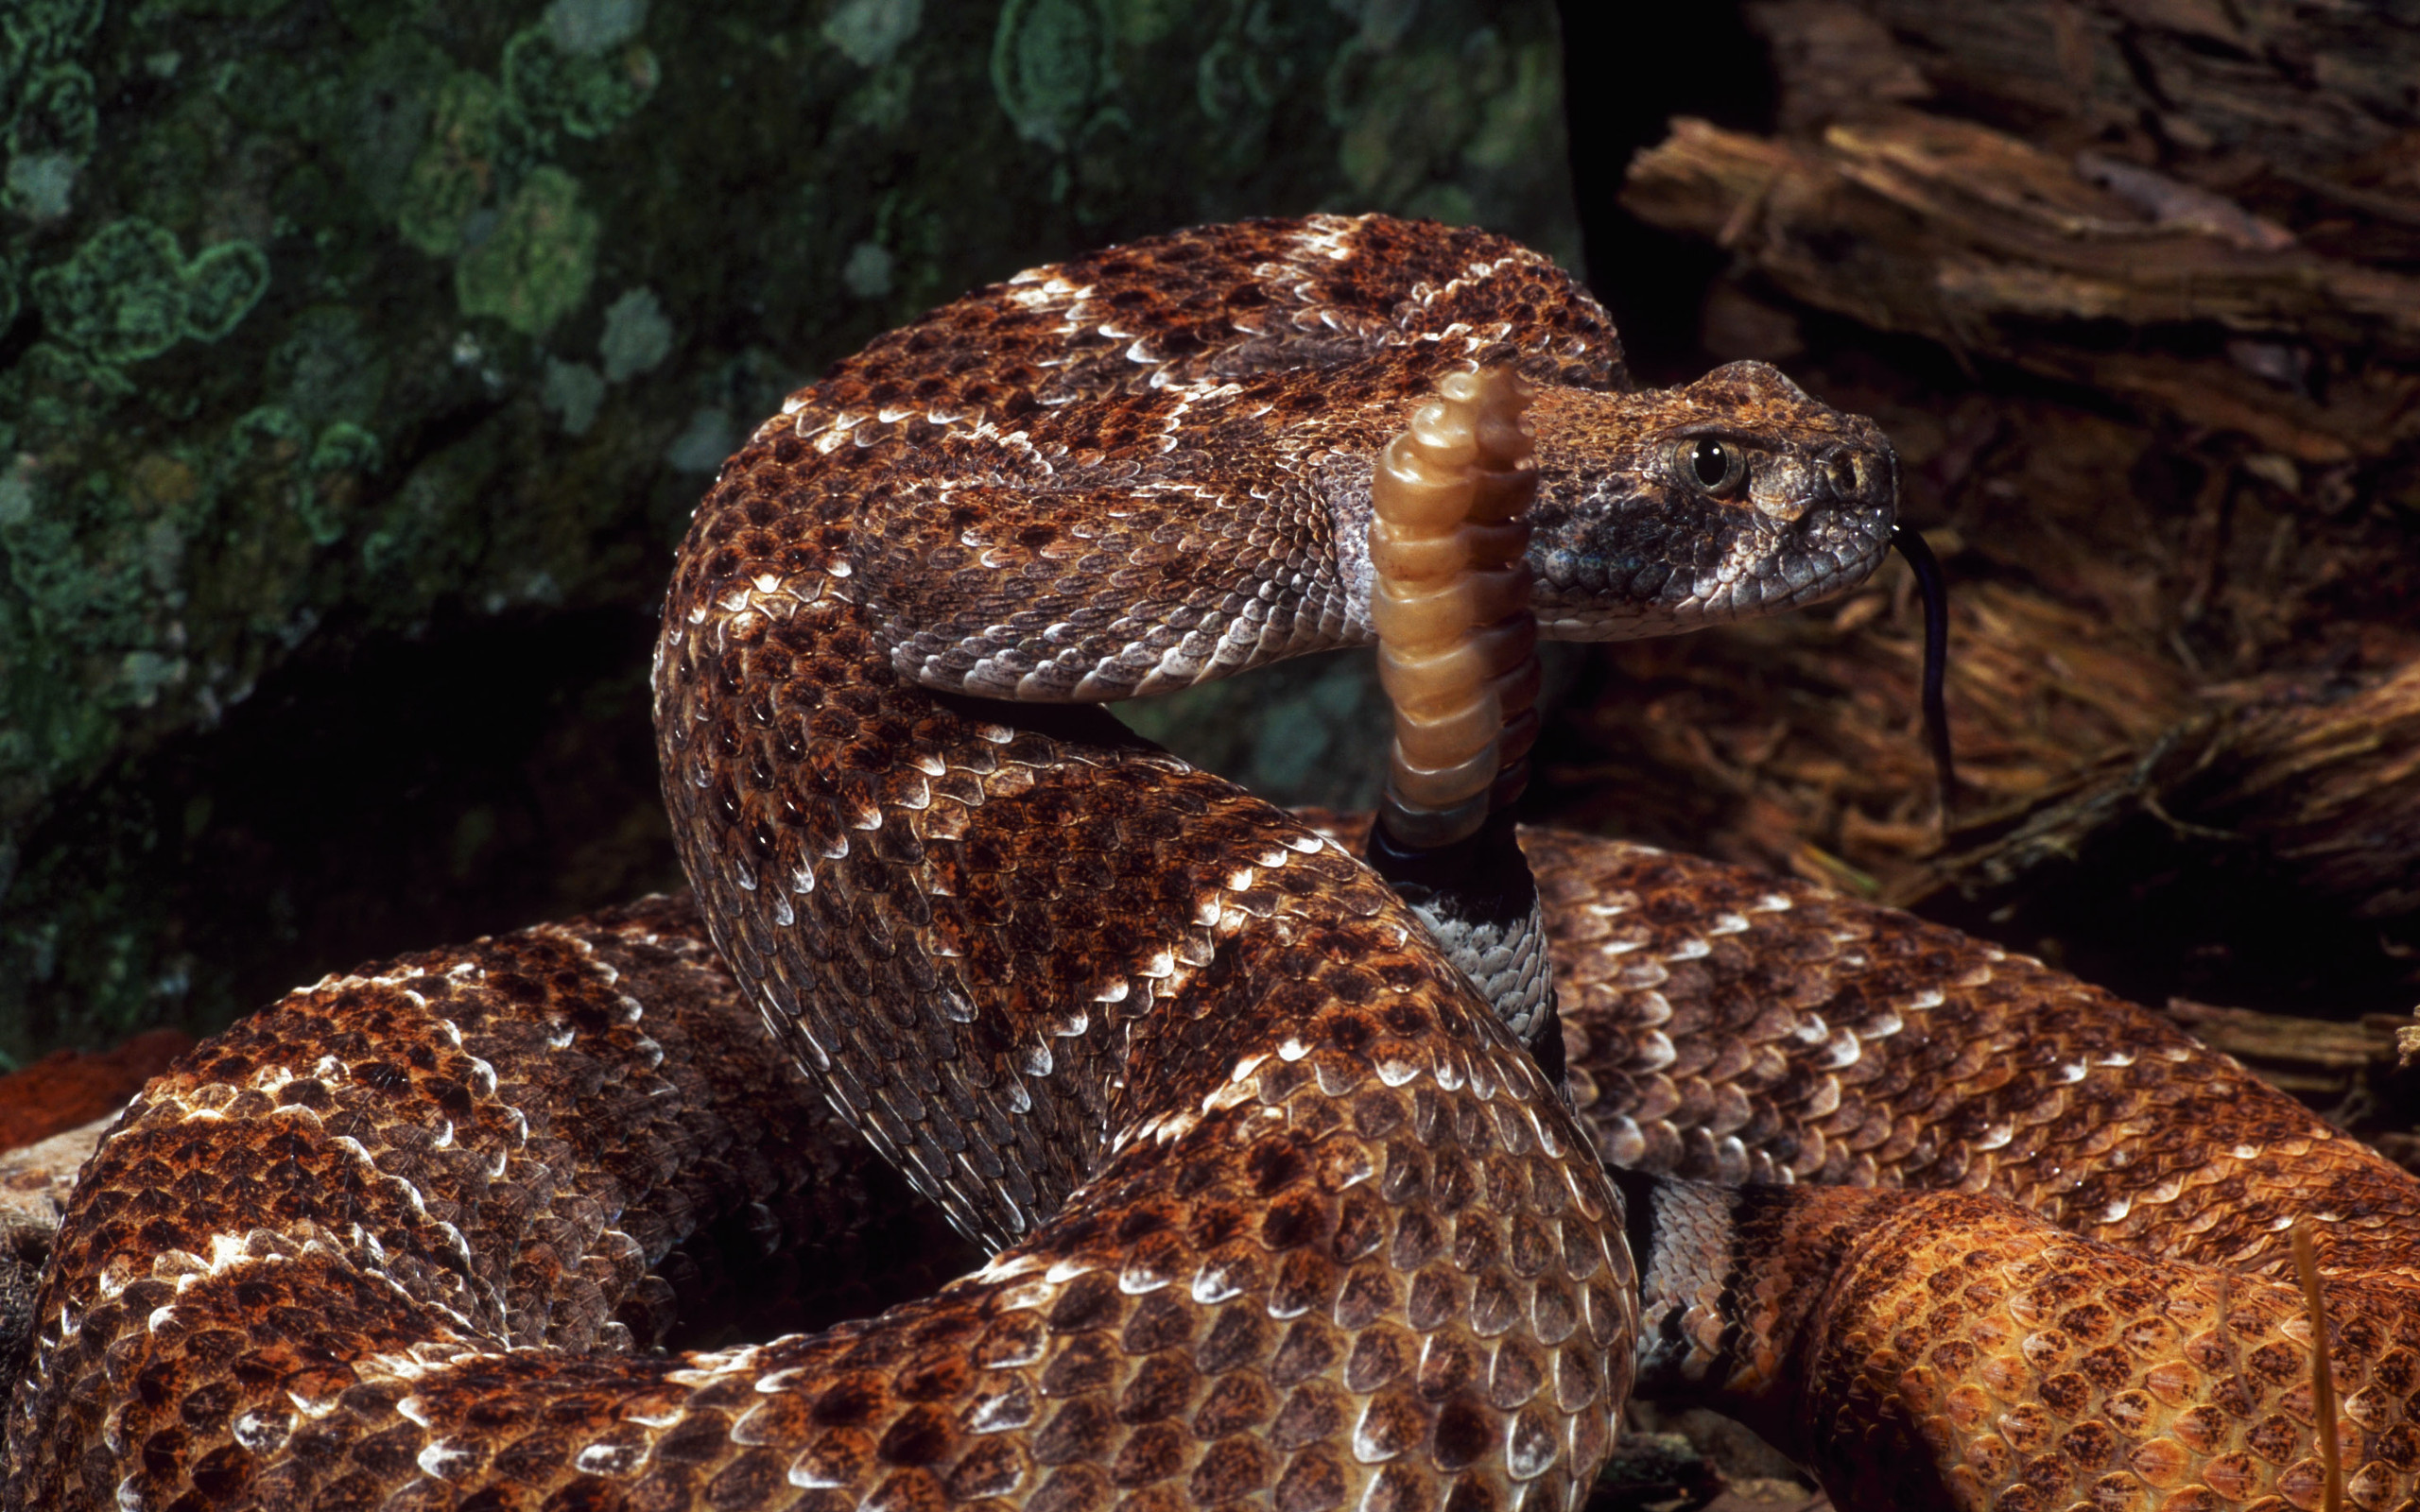 Animal Rattlesnake HD Wallpaper | Background Image